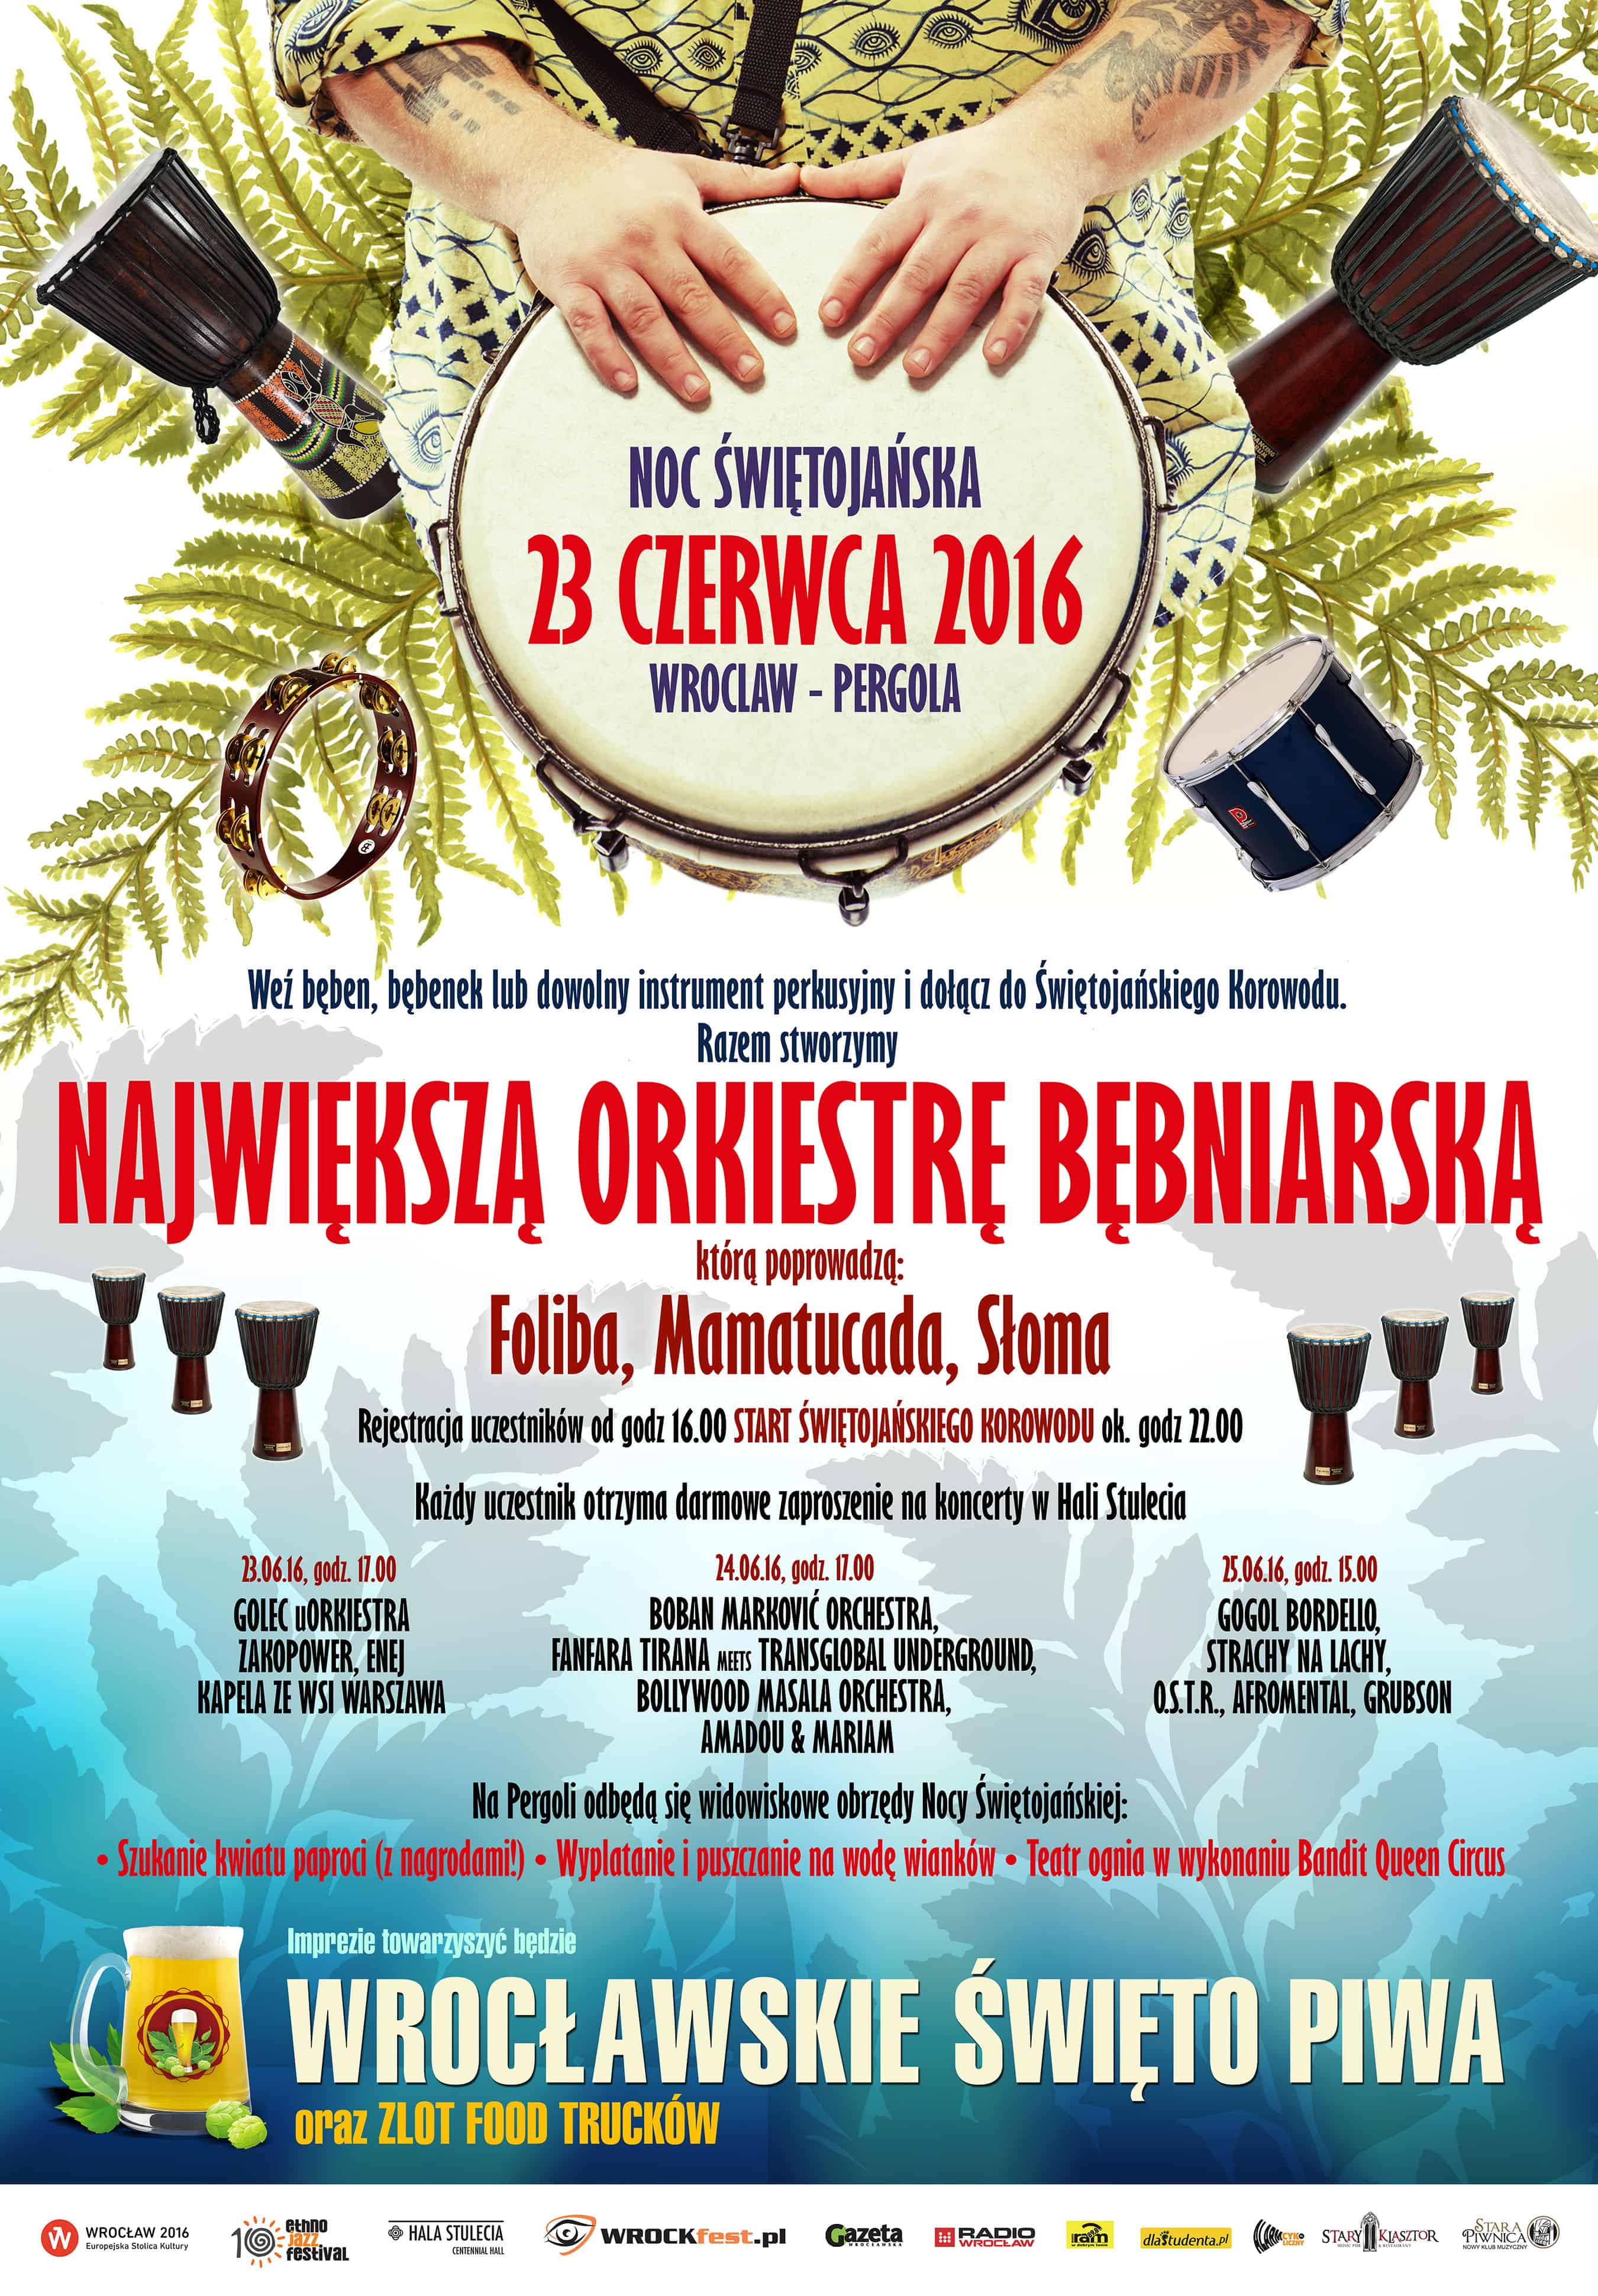 Zagraj w Największej Orkiestrze Bębniarskiej podczas Nocy Świętojańskiej we Wrocławiu!